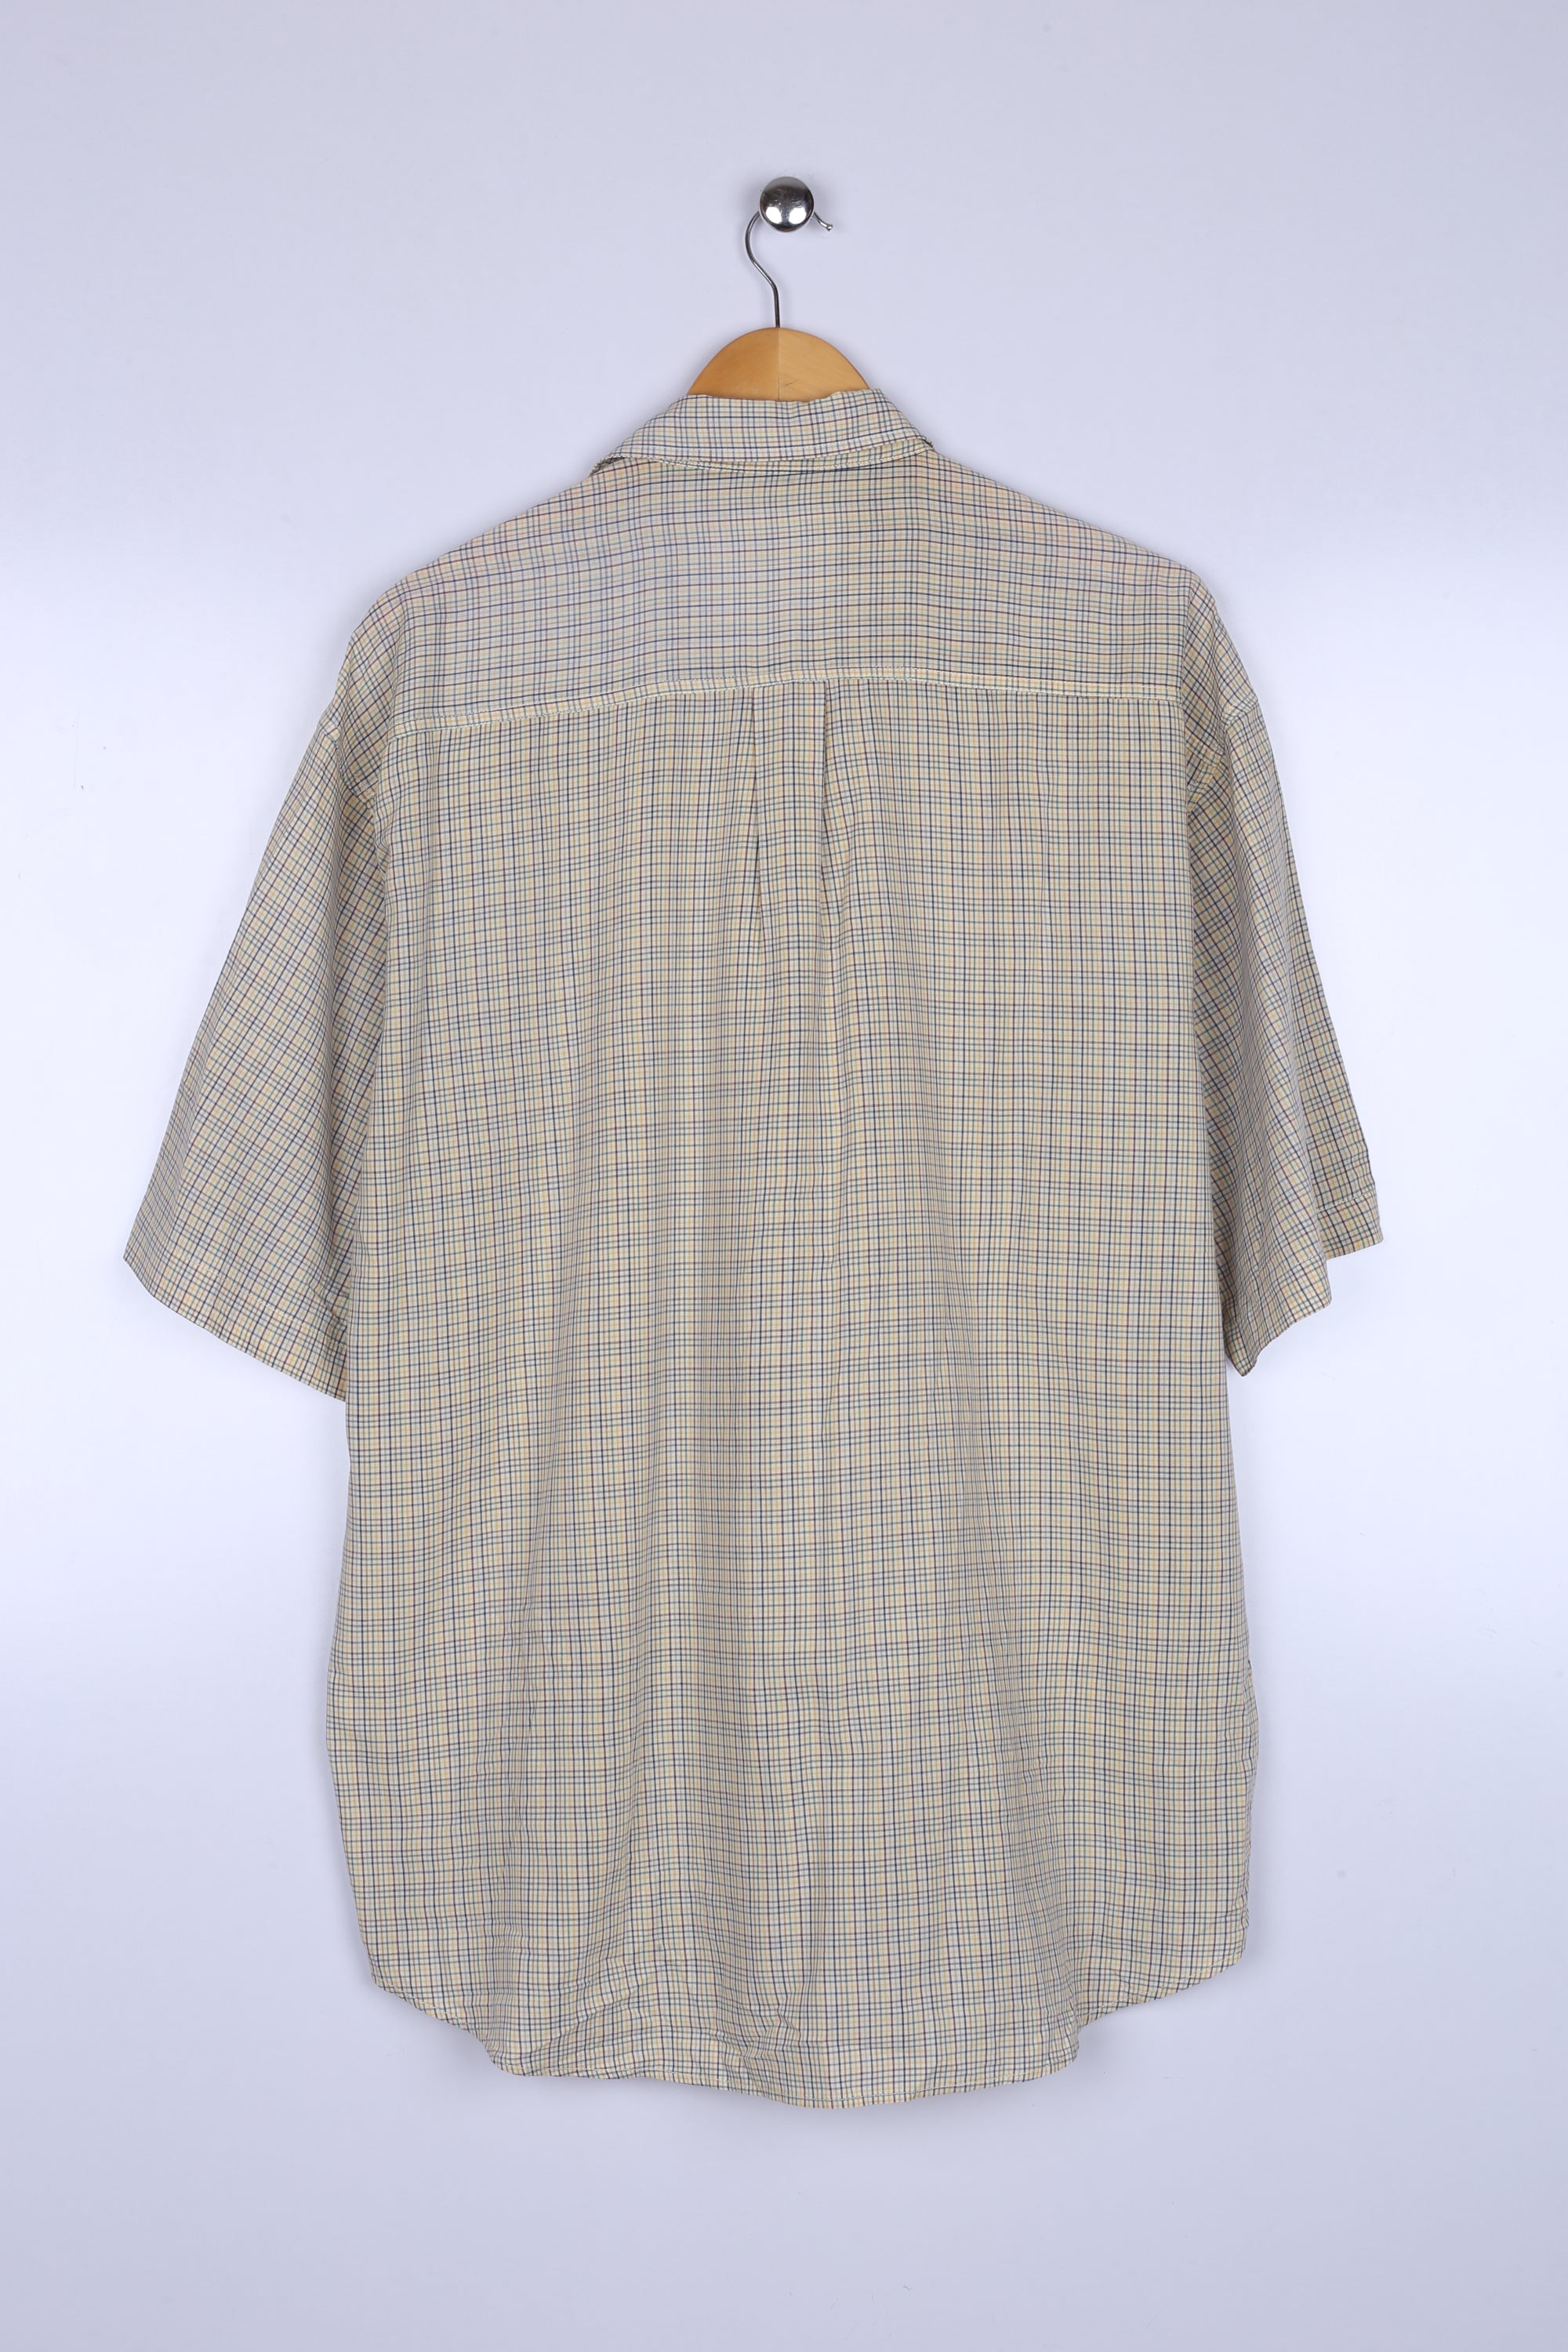 Vintage Ralph Lauren Half Sleeve Shirt Brown Checkered